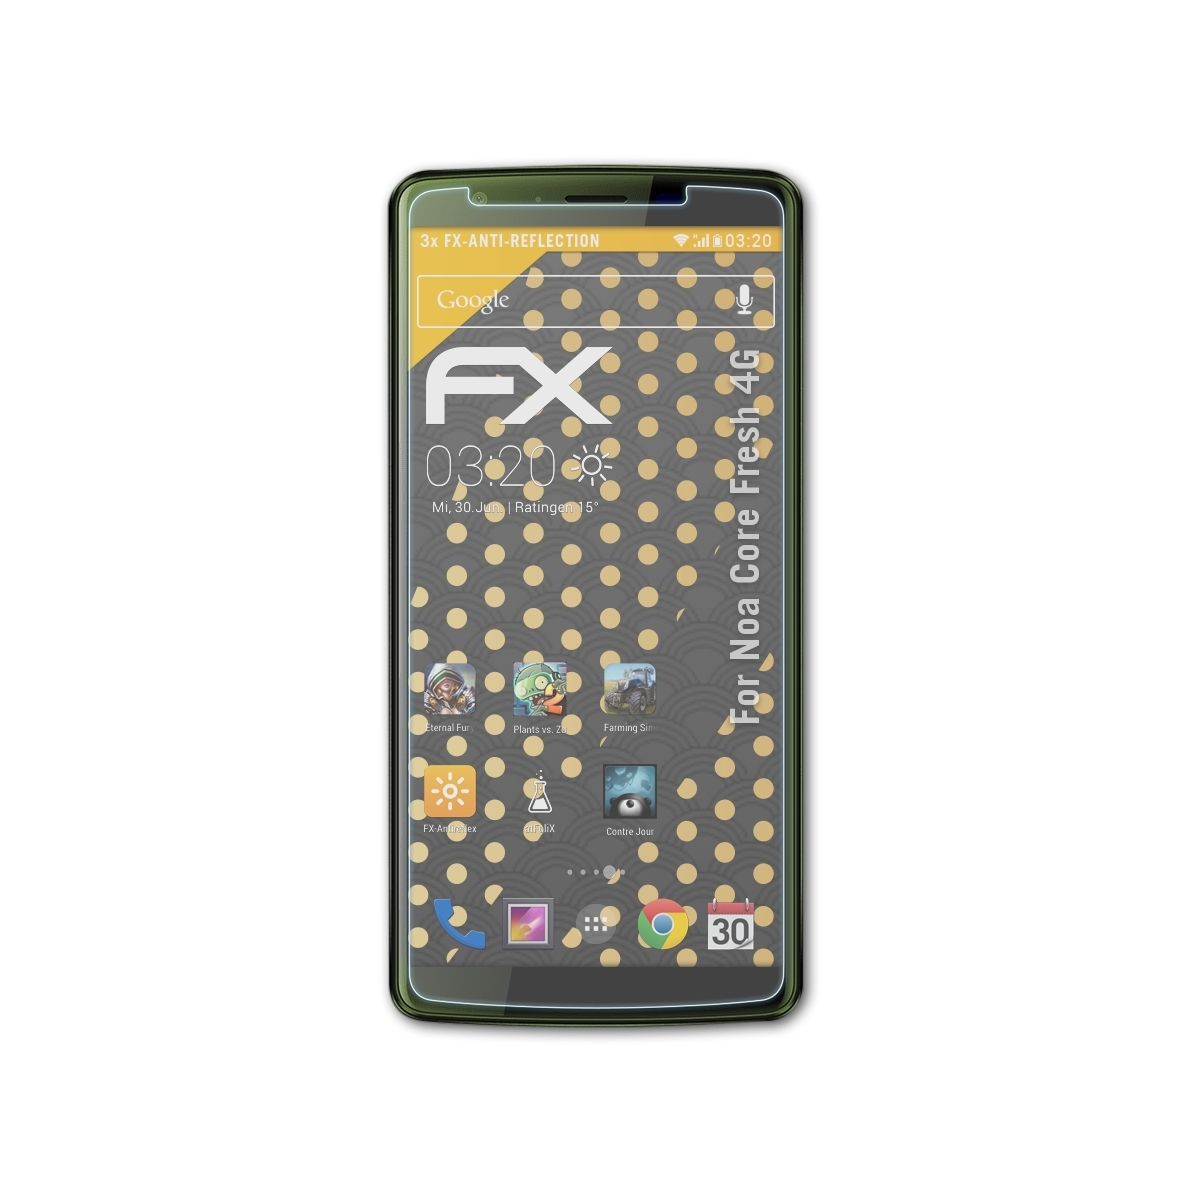 Noa Core Fresh ATFOLIX Displayschutz(für FX-Antireflex 4G) 3x